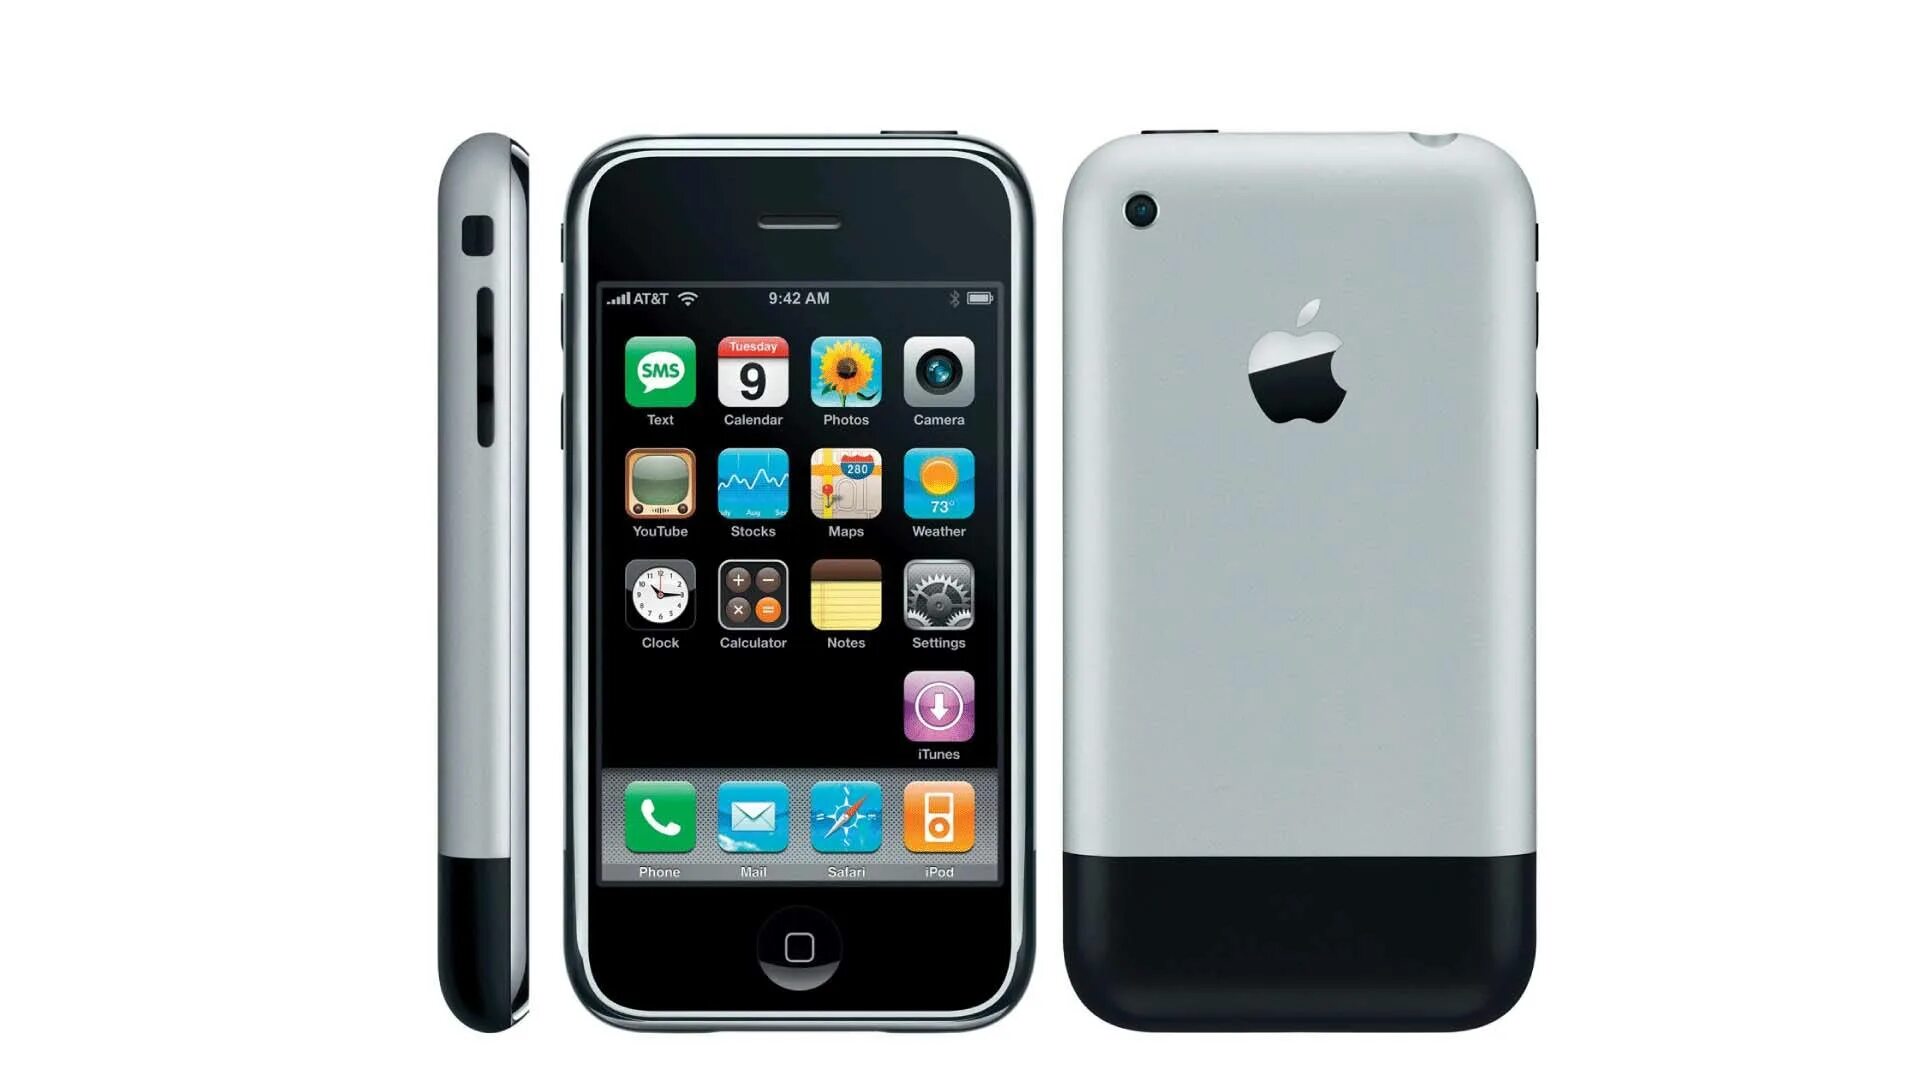 Apple iphone 1. Apple iphone 2g. Iphone 2007. Iphone 1 2007.